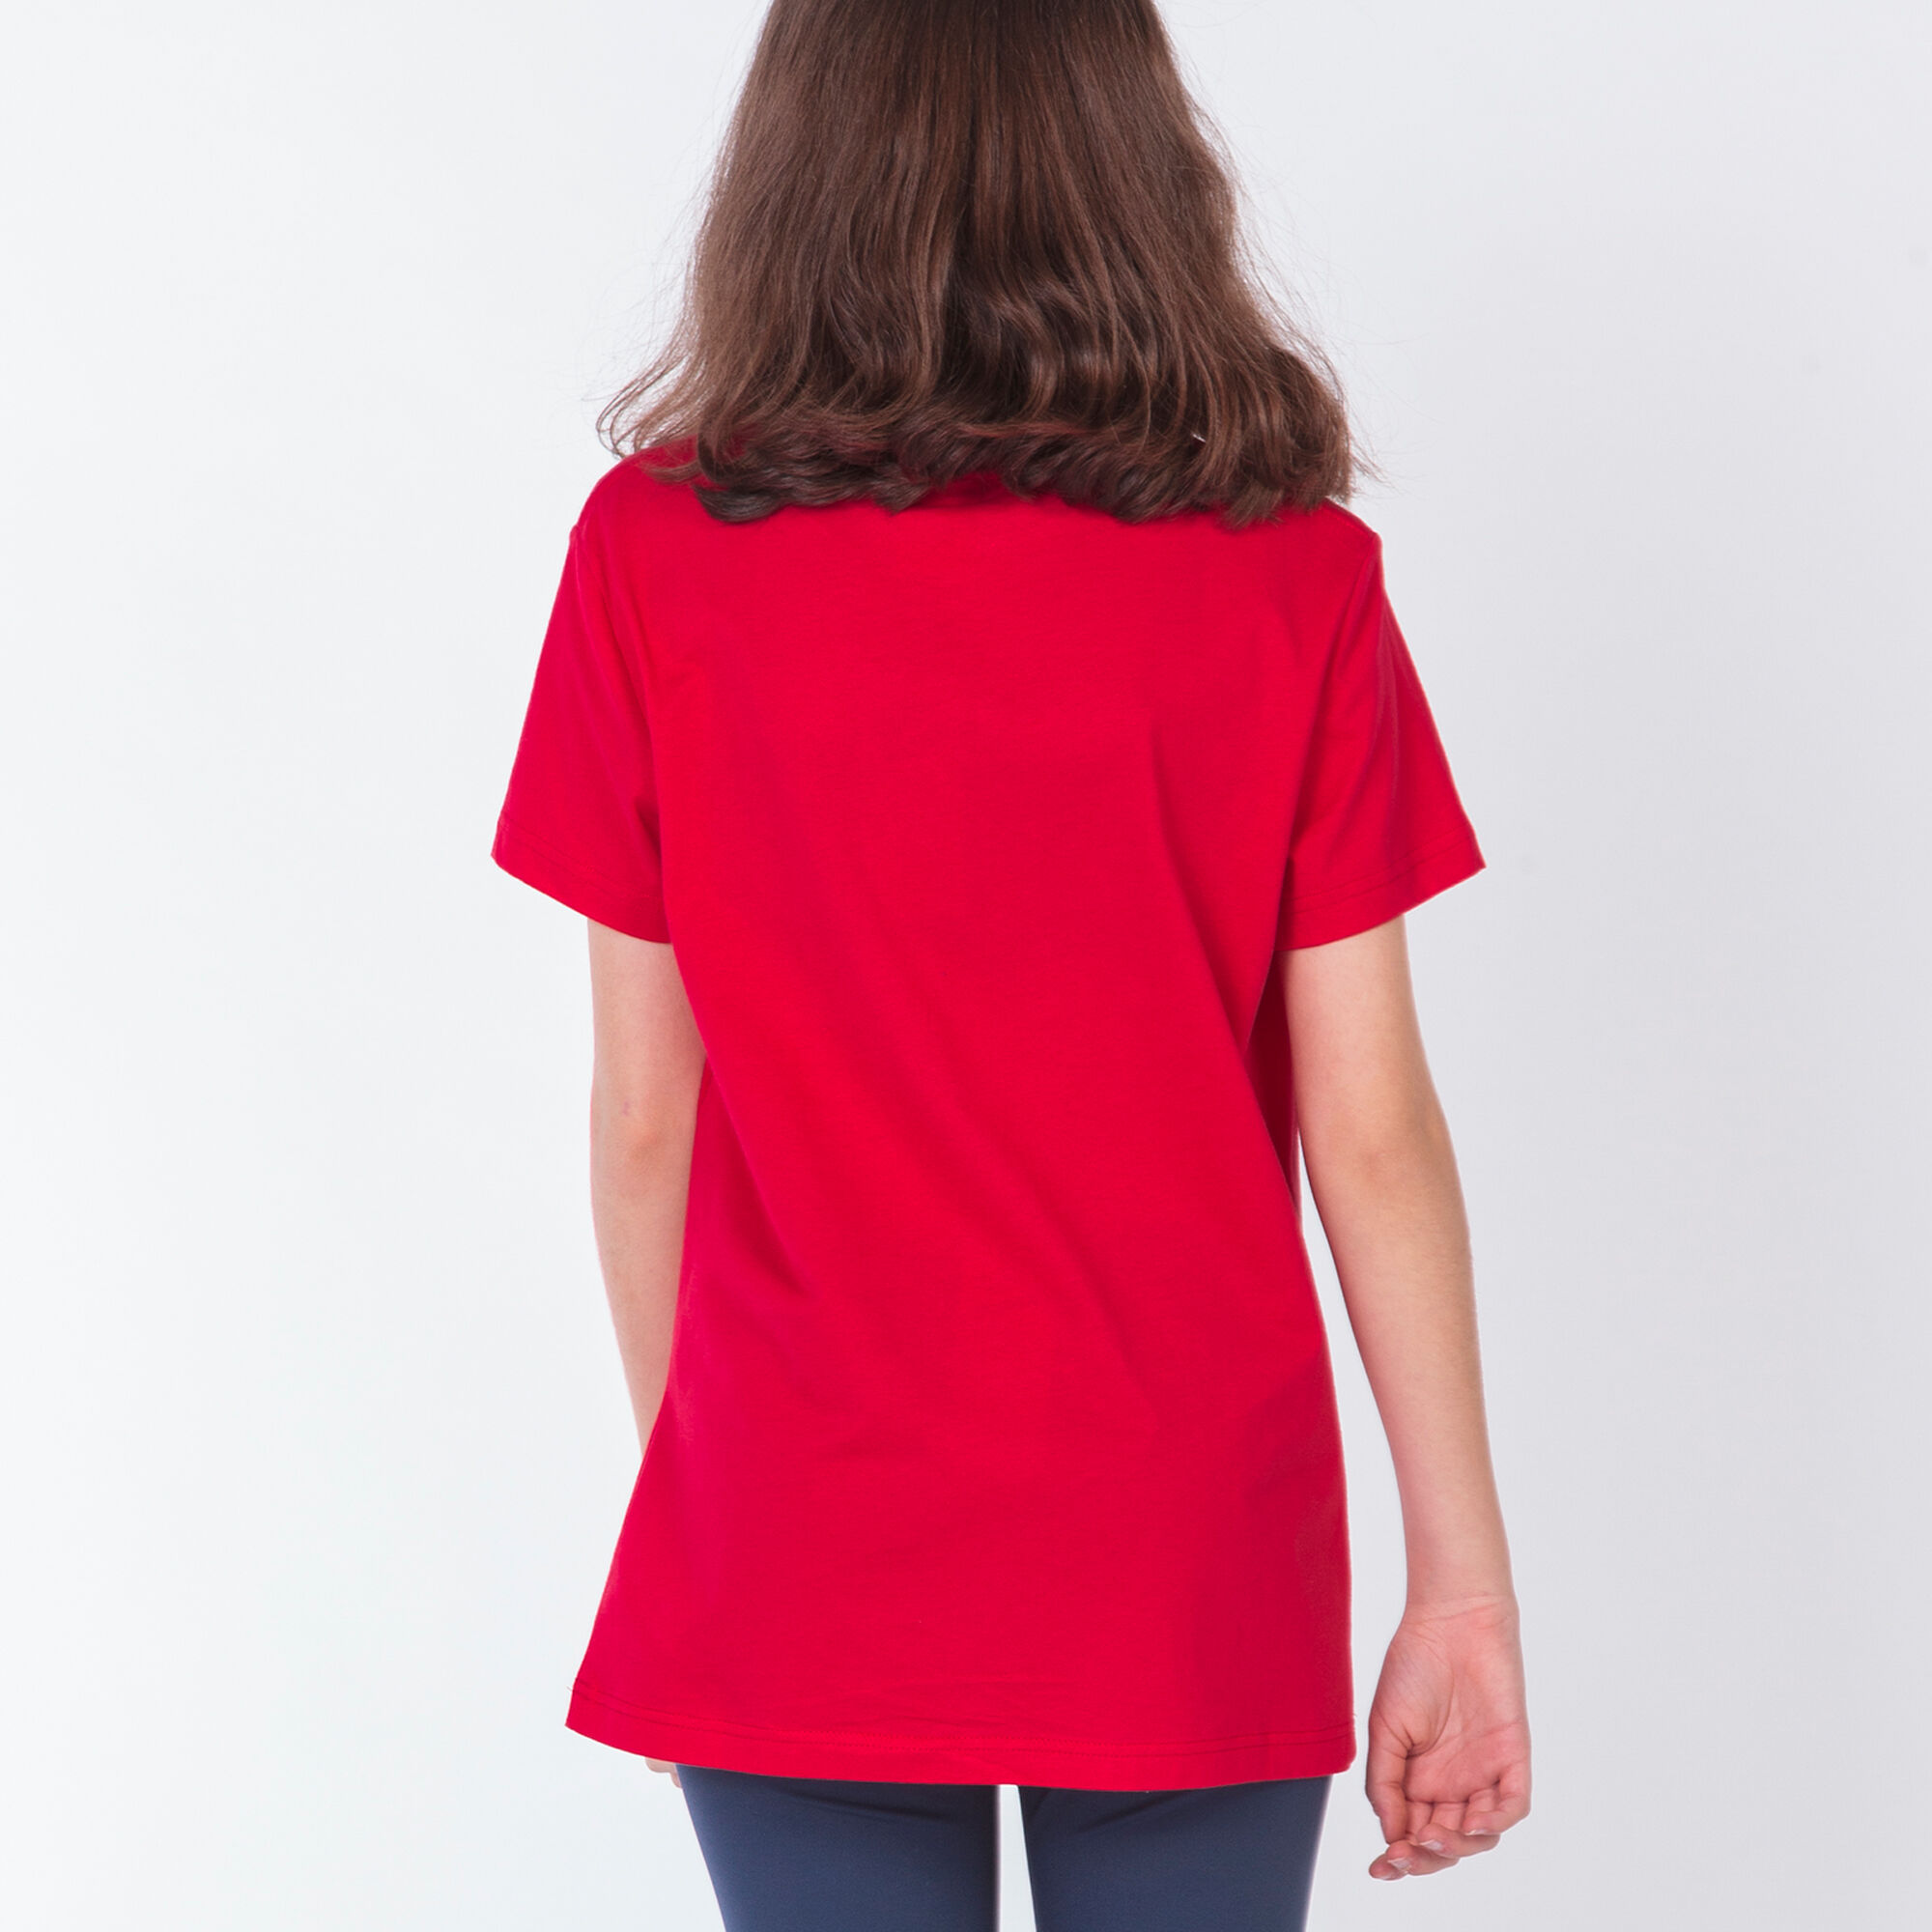 Camiseta manga corta mujer Desert rojo